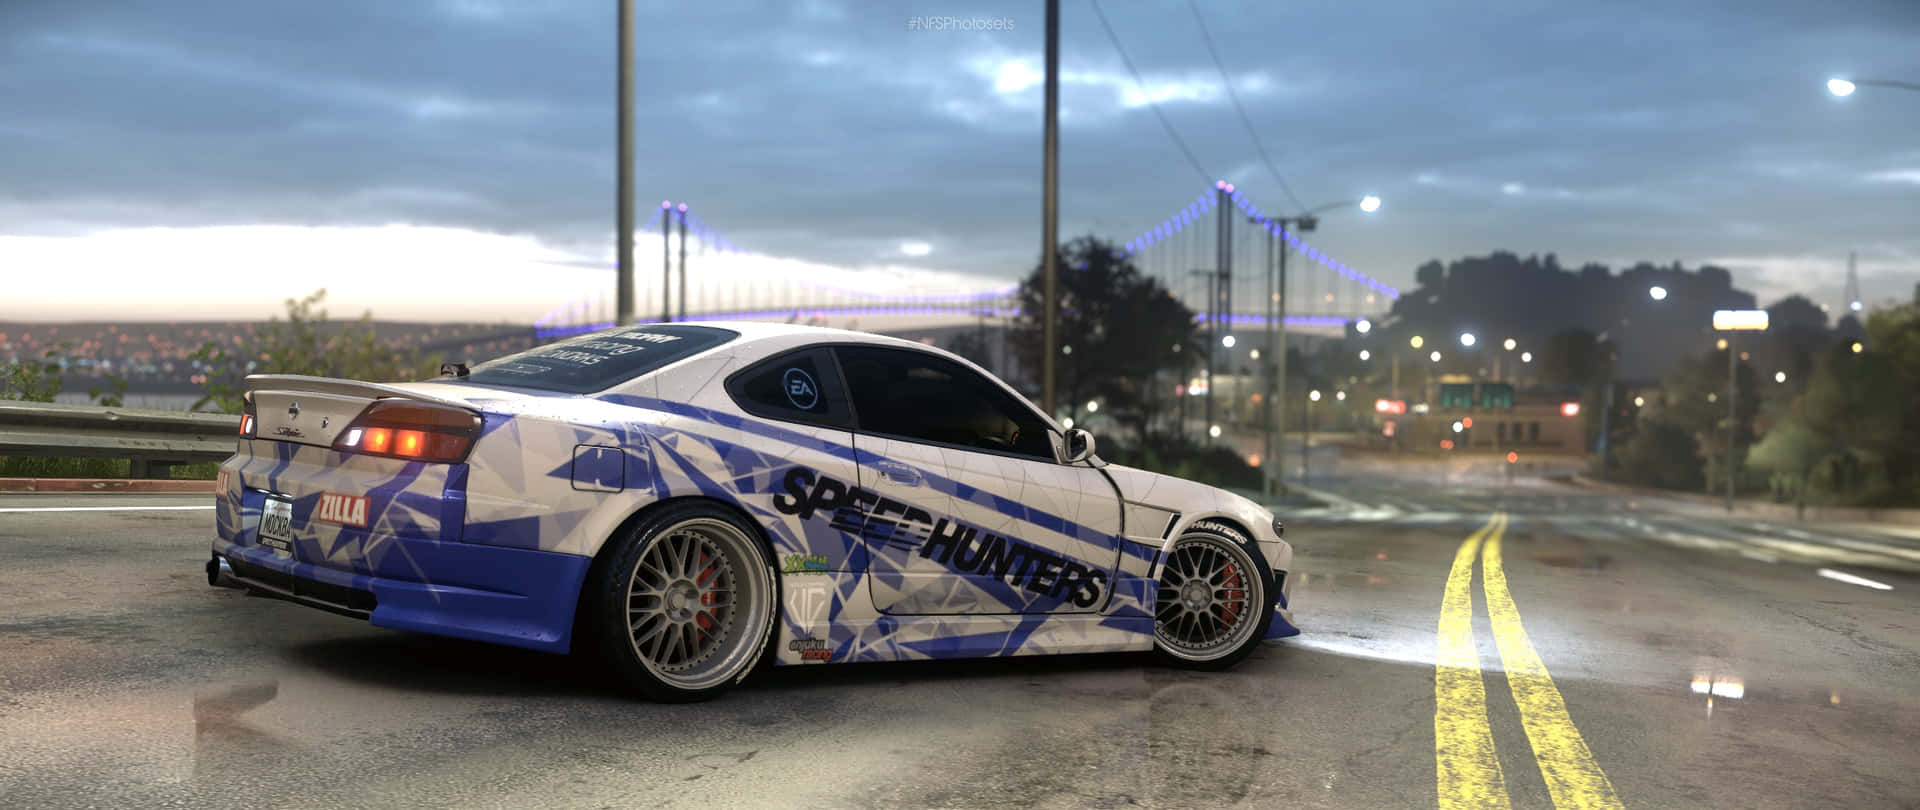 Need For Speed World Custom Car Dusk Scene Wallpaper